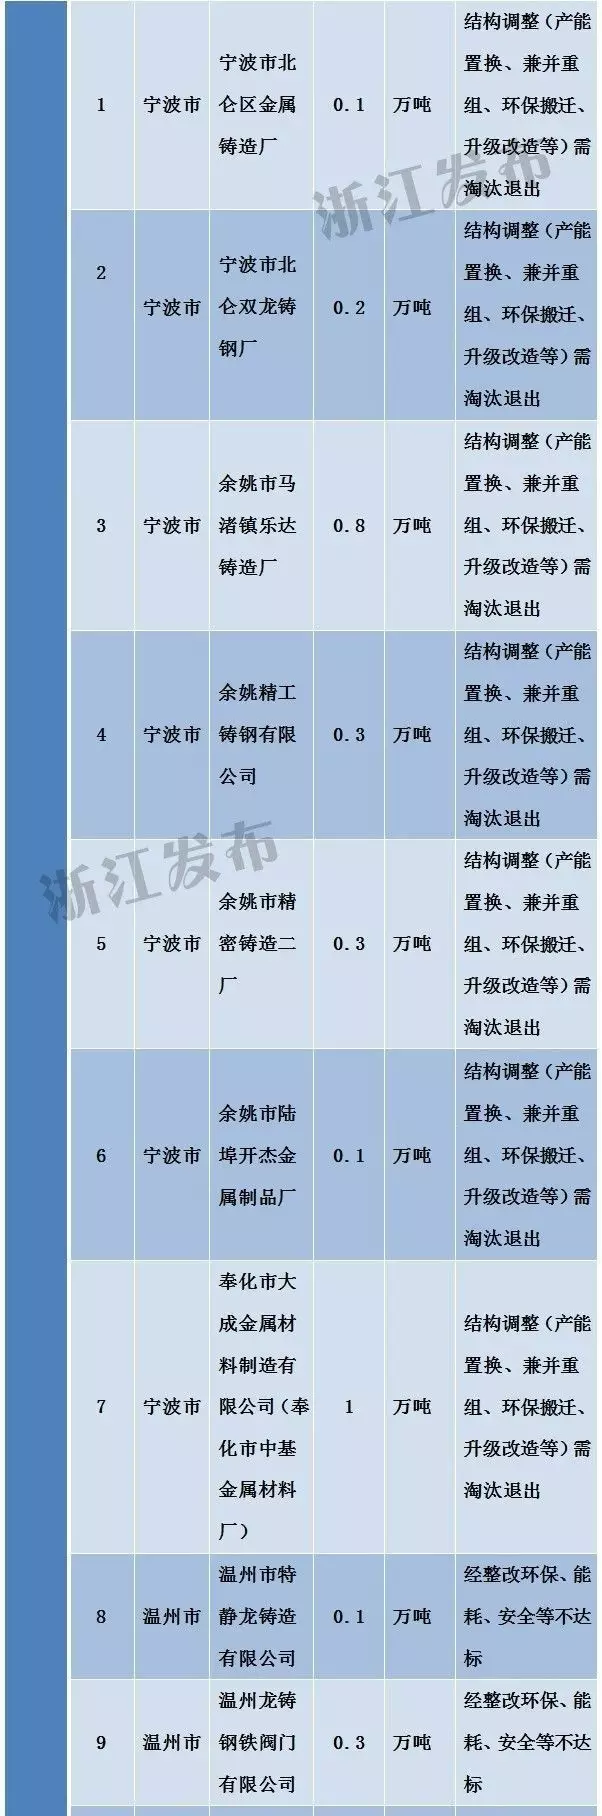 浙江工业经济转型升级之路 184家需淘汰落后和过剩产能的企业名单公布